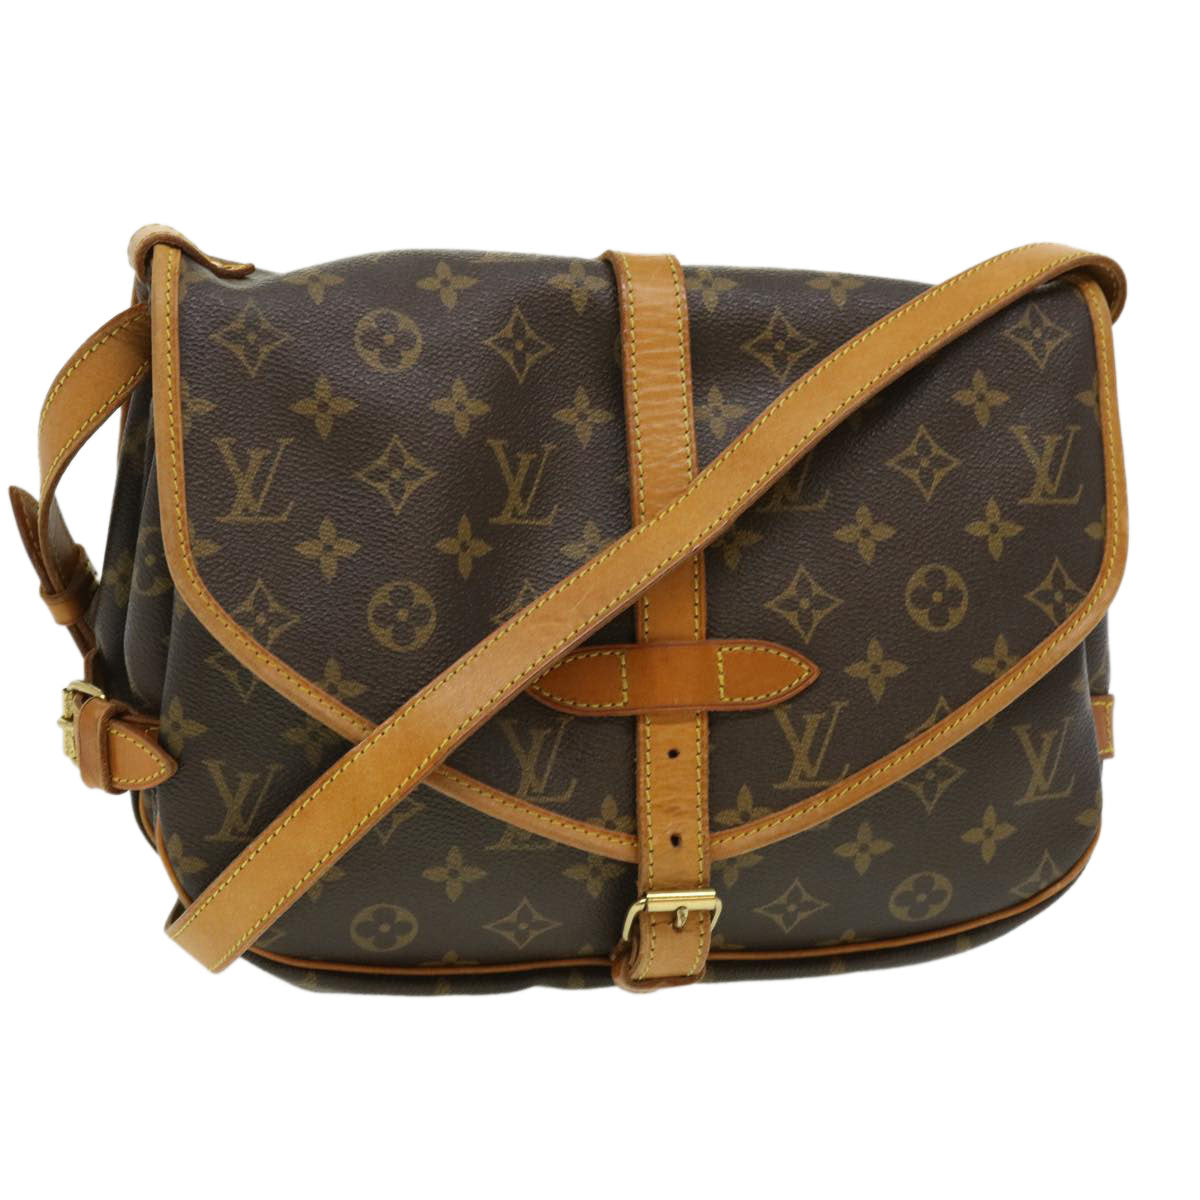 Louis Vuitton: Online Pre-Launch: The Saumur Handbag